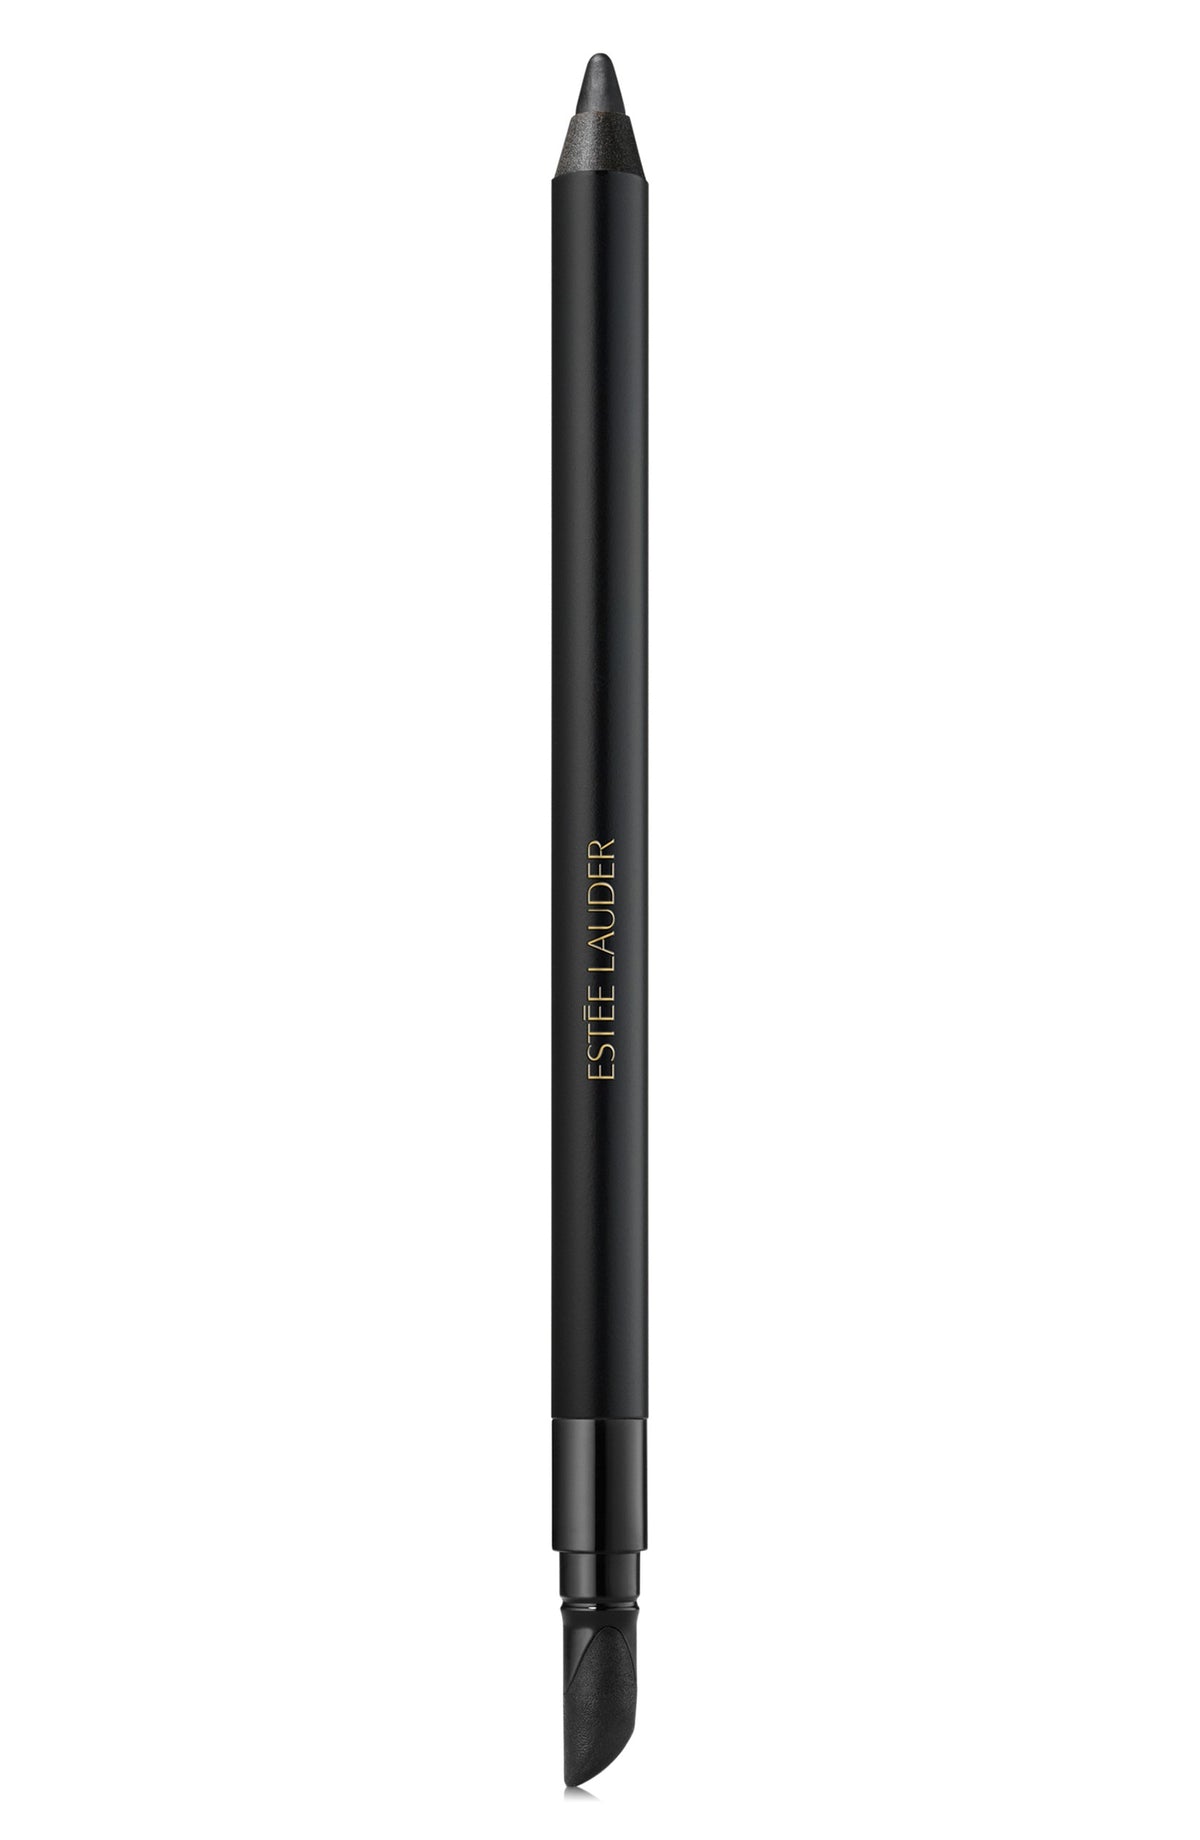 Estee Lauder Double Wear 24H Waterproof Gel Eye Pencil